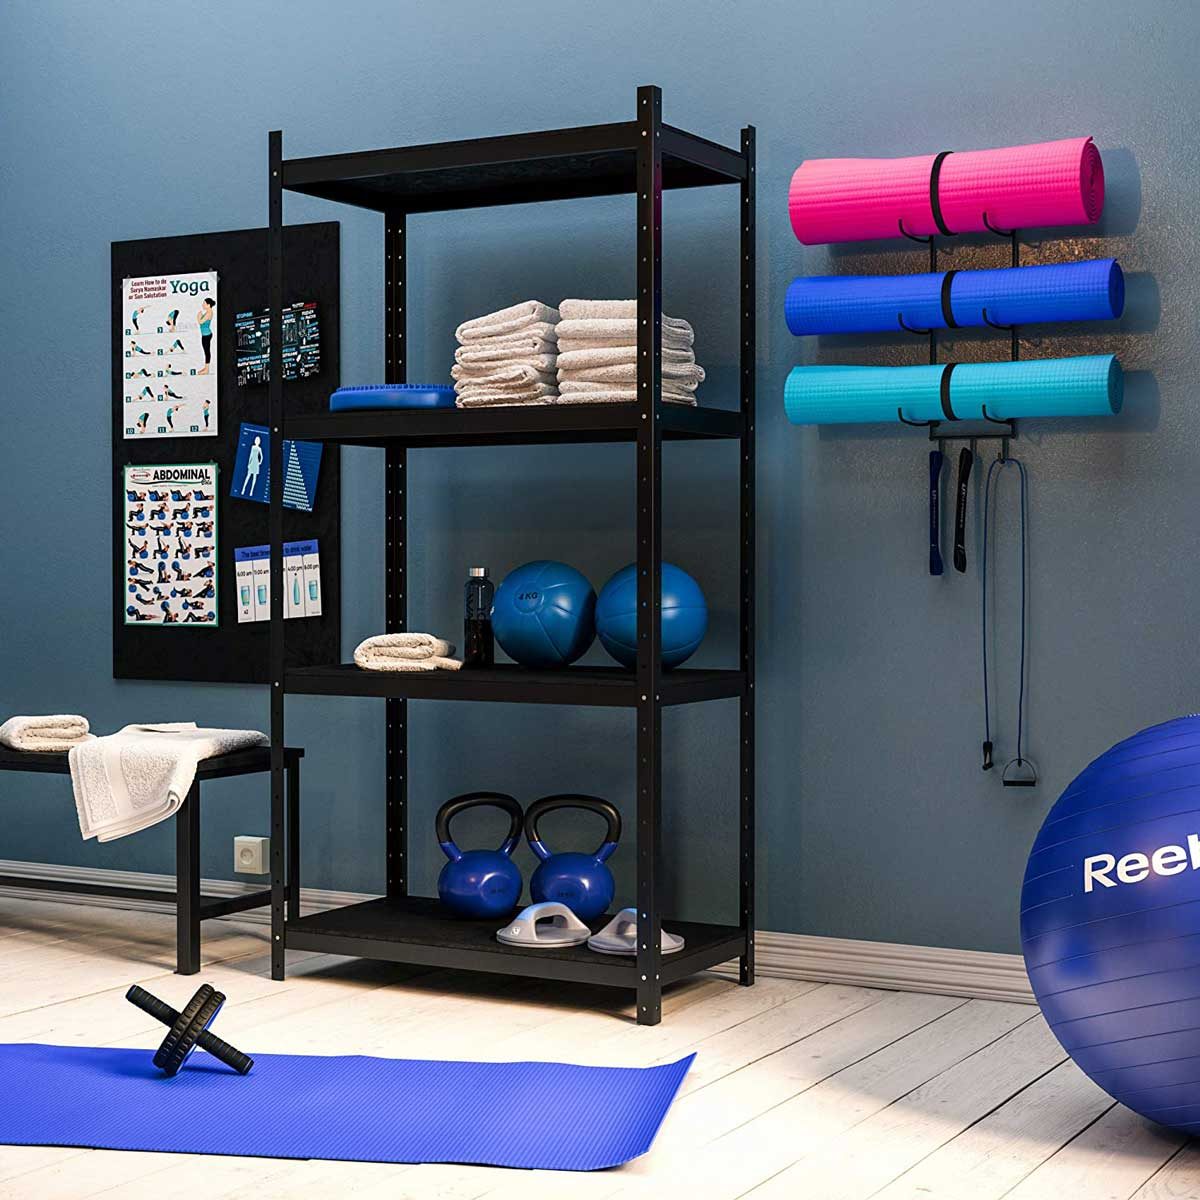 8 Best Home Gym Equipment Storage Ideas 2022